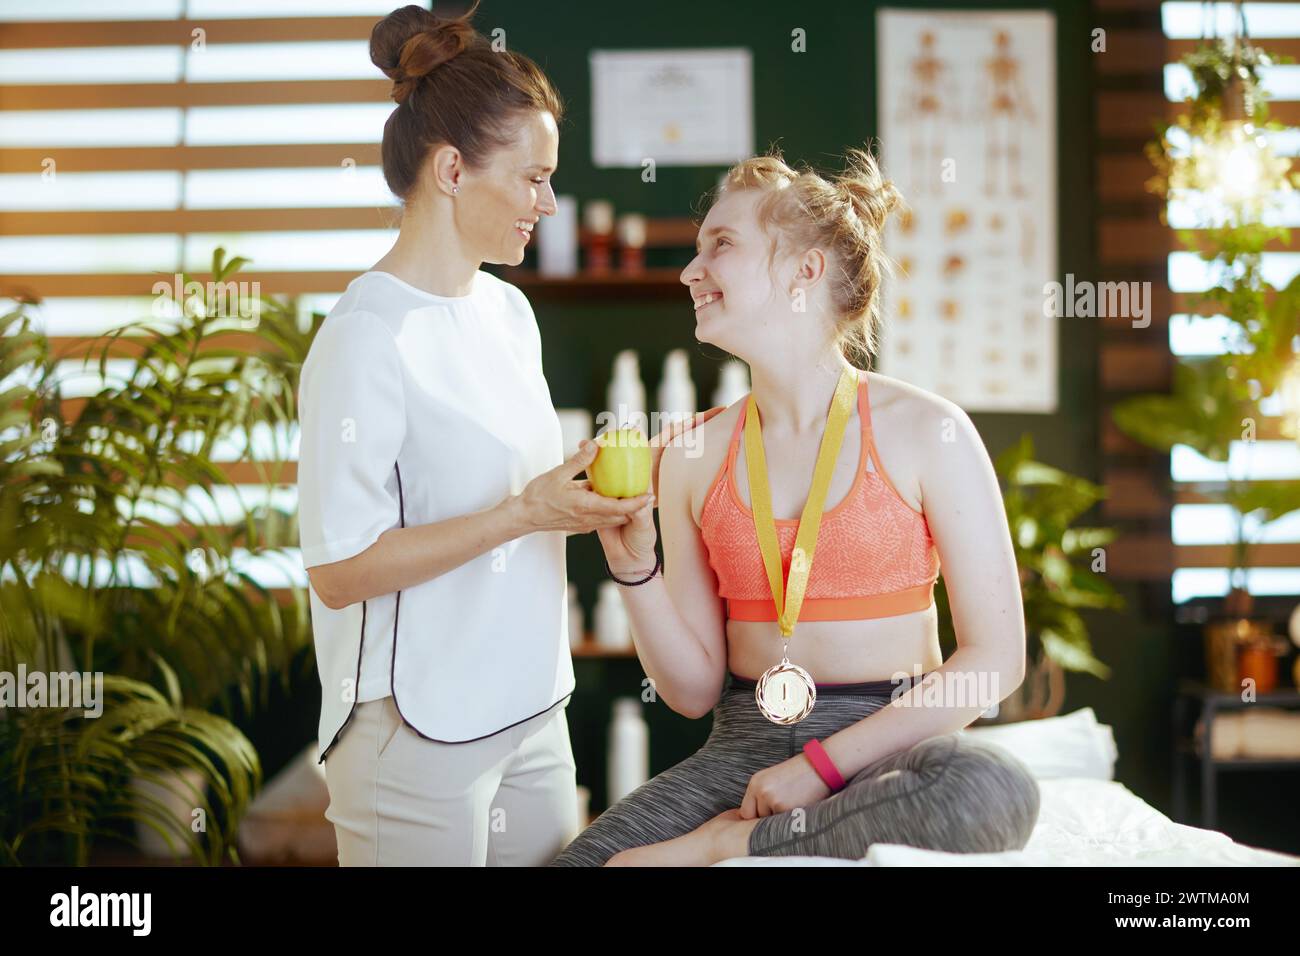 Le temps des soins de santé. femme thérapeute de massage souriant dans l'armoire de massage avec le client adolescent, une pomme et médaille d'or. Banque D'Images